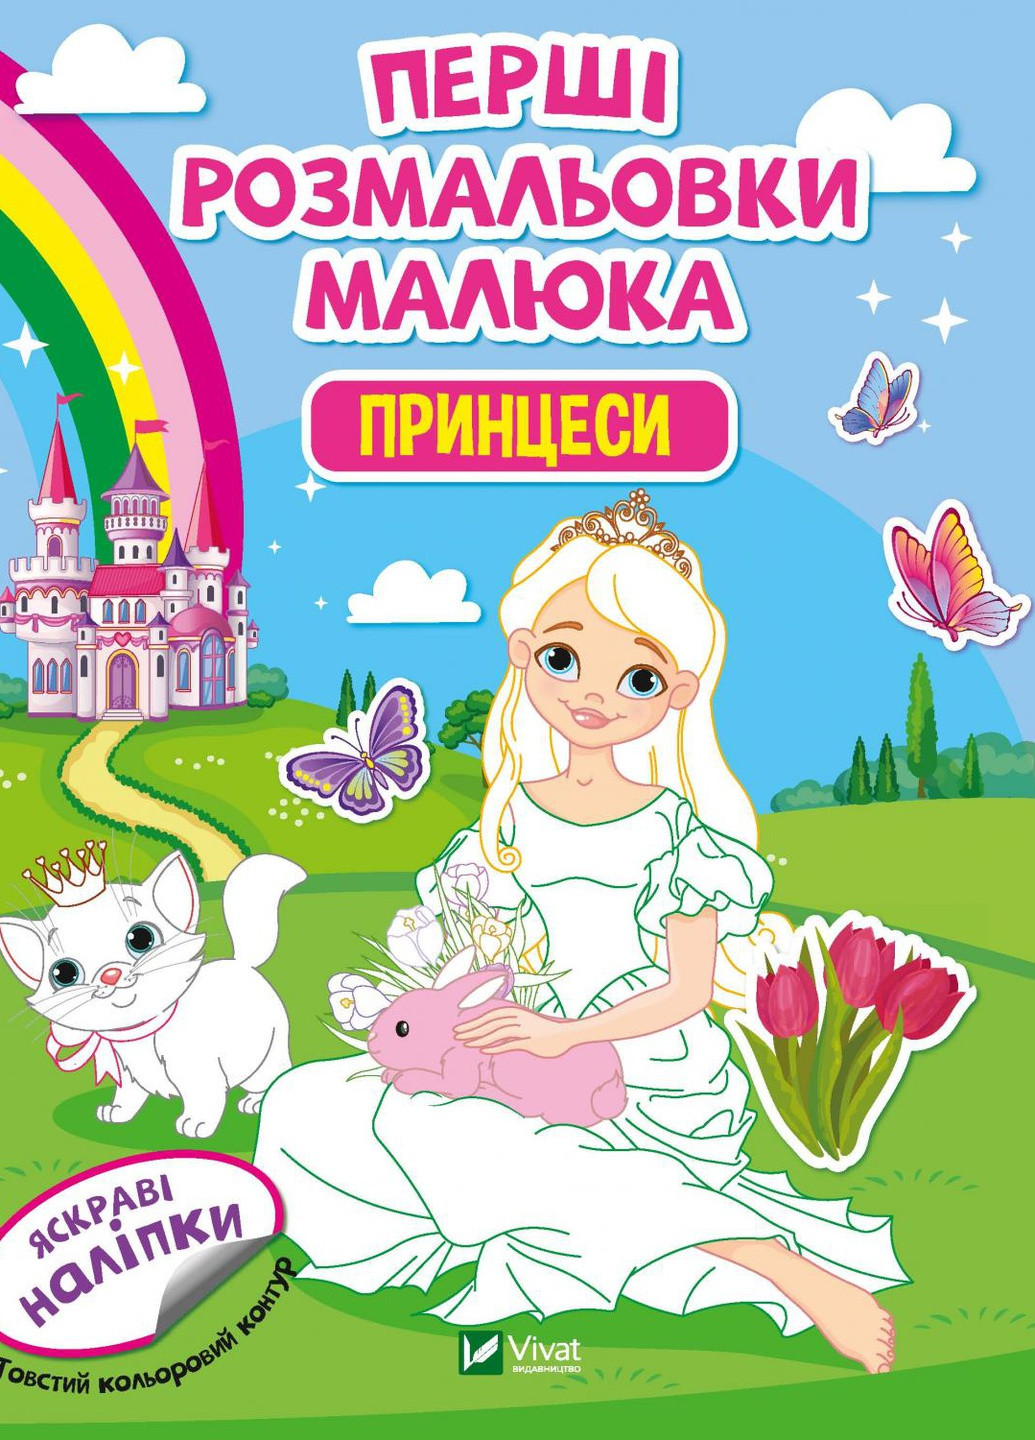 Дитяче книжкове видання "Перші розмальовки малюка. Принцеси" Vivat (258335061)